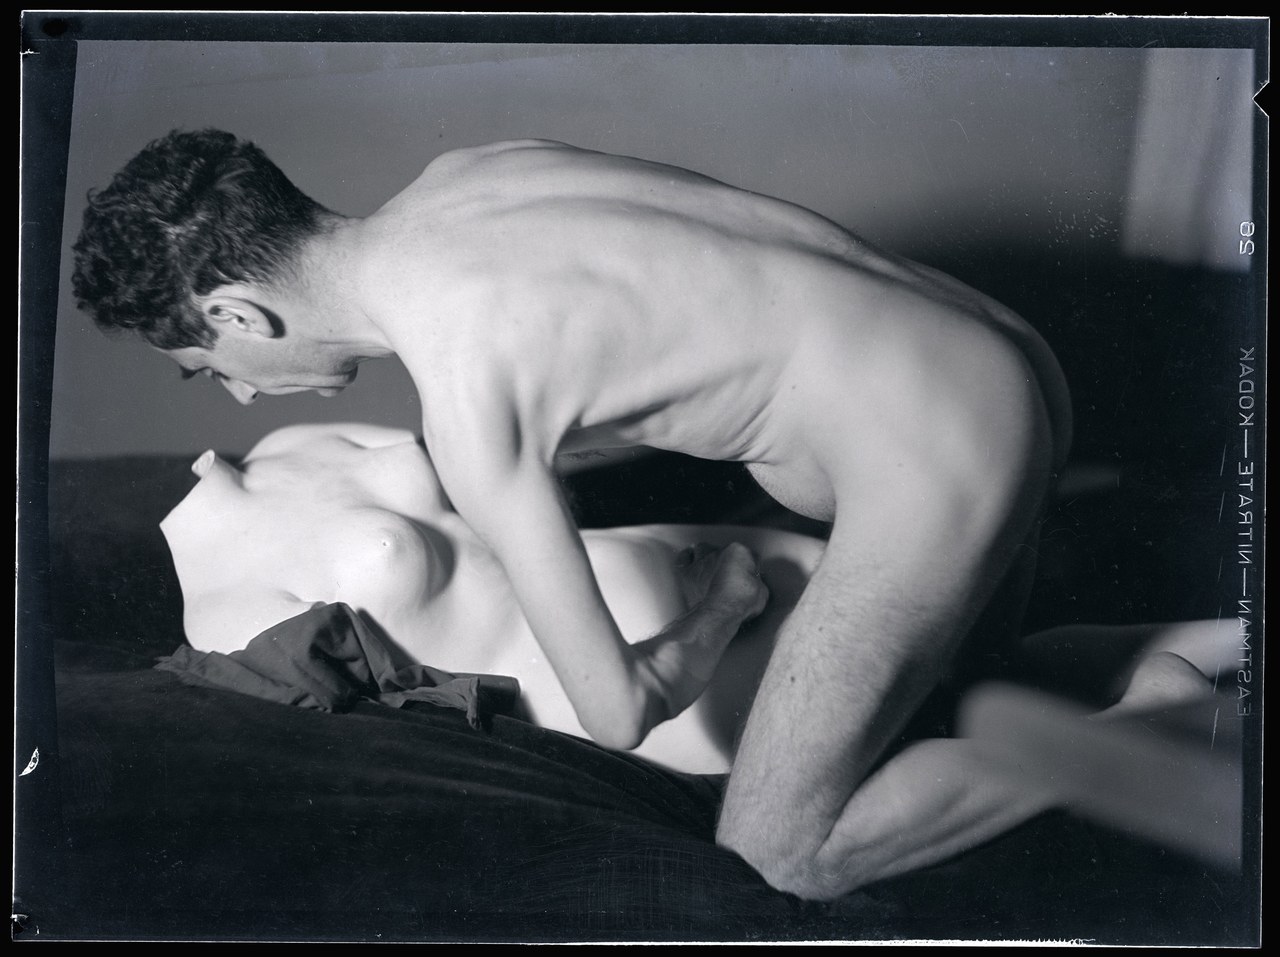 Man Ray, Autoportrait nu avec un buste en plâtre, 1930 ca, negativo alla gelatina di bromuro d’argento su supporto flessibile nitrato (immagine ottenuta per inversione tonale), cm 8,5 x 11,5, Musée National d’Art Moderne, Parigi © Man Ray Trust / Adagp